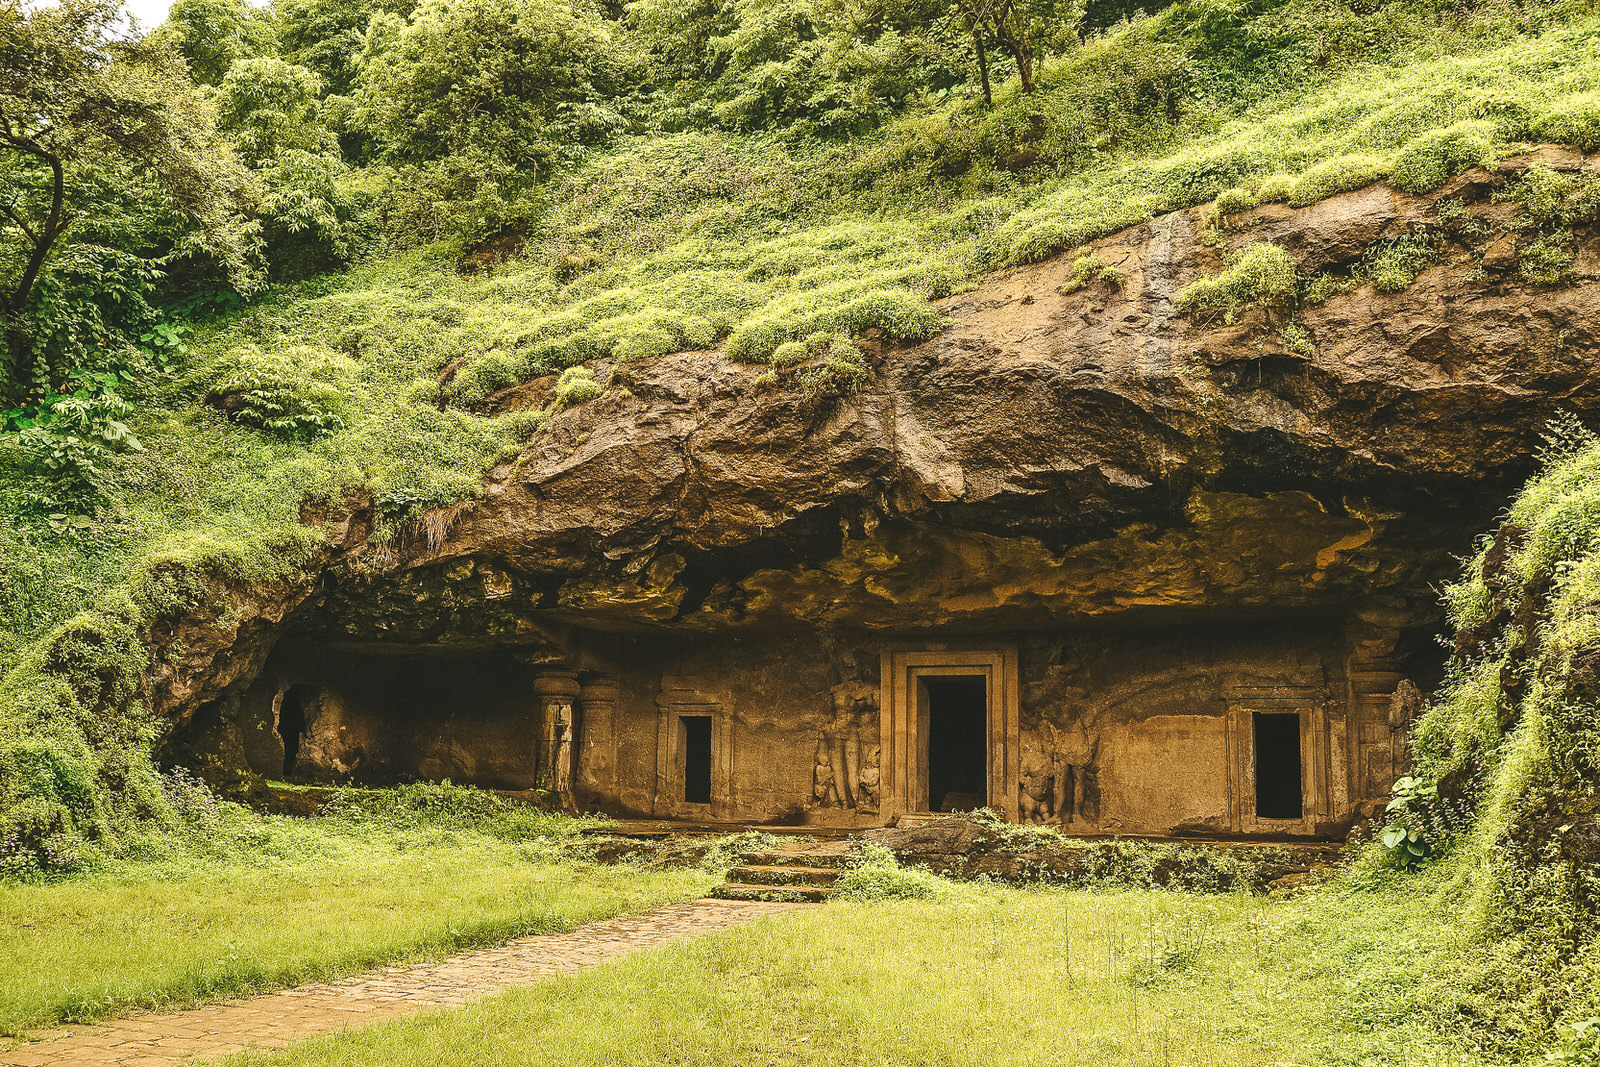 Elephanta Caves in Mumbai, a tranquil island experience